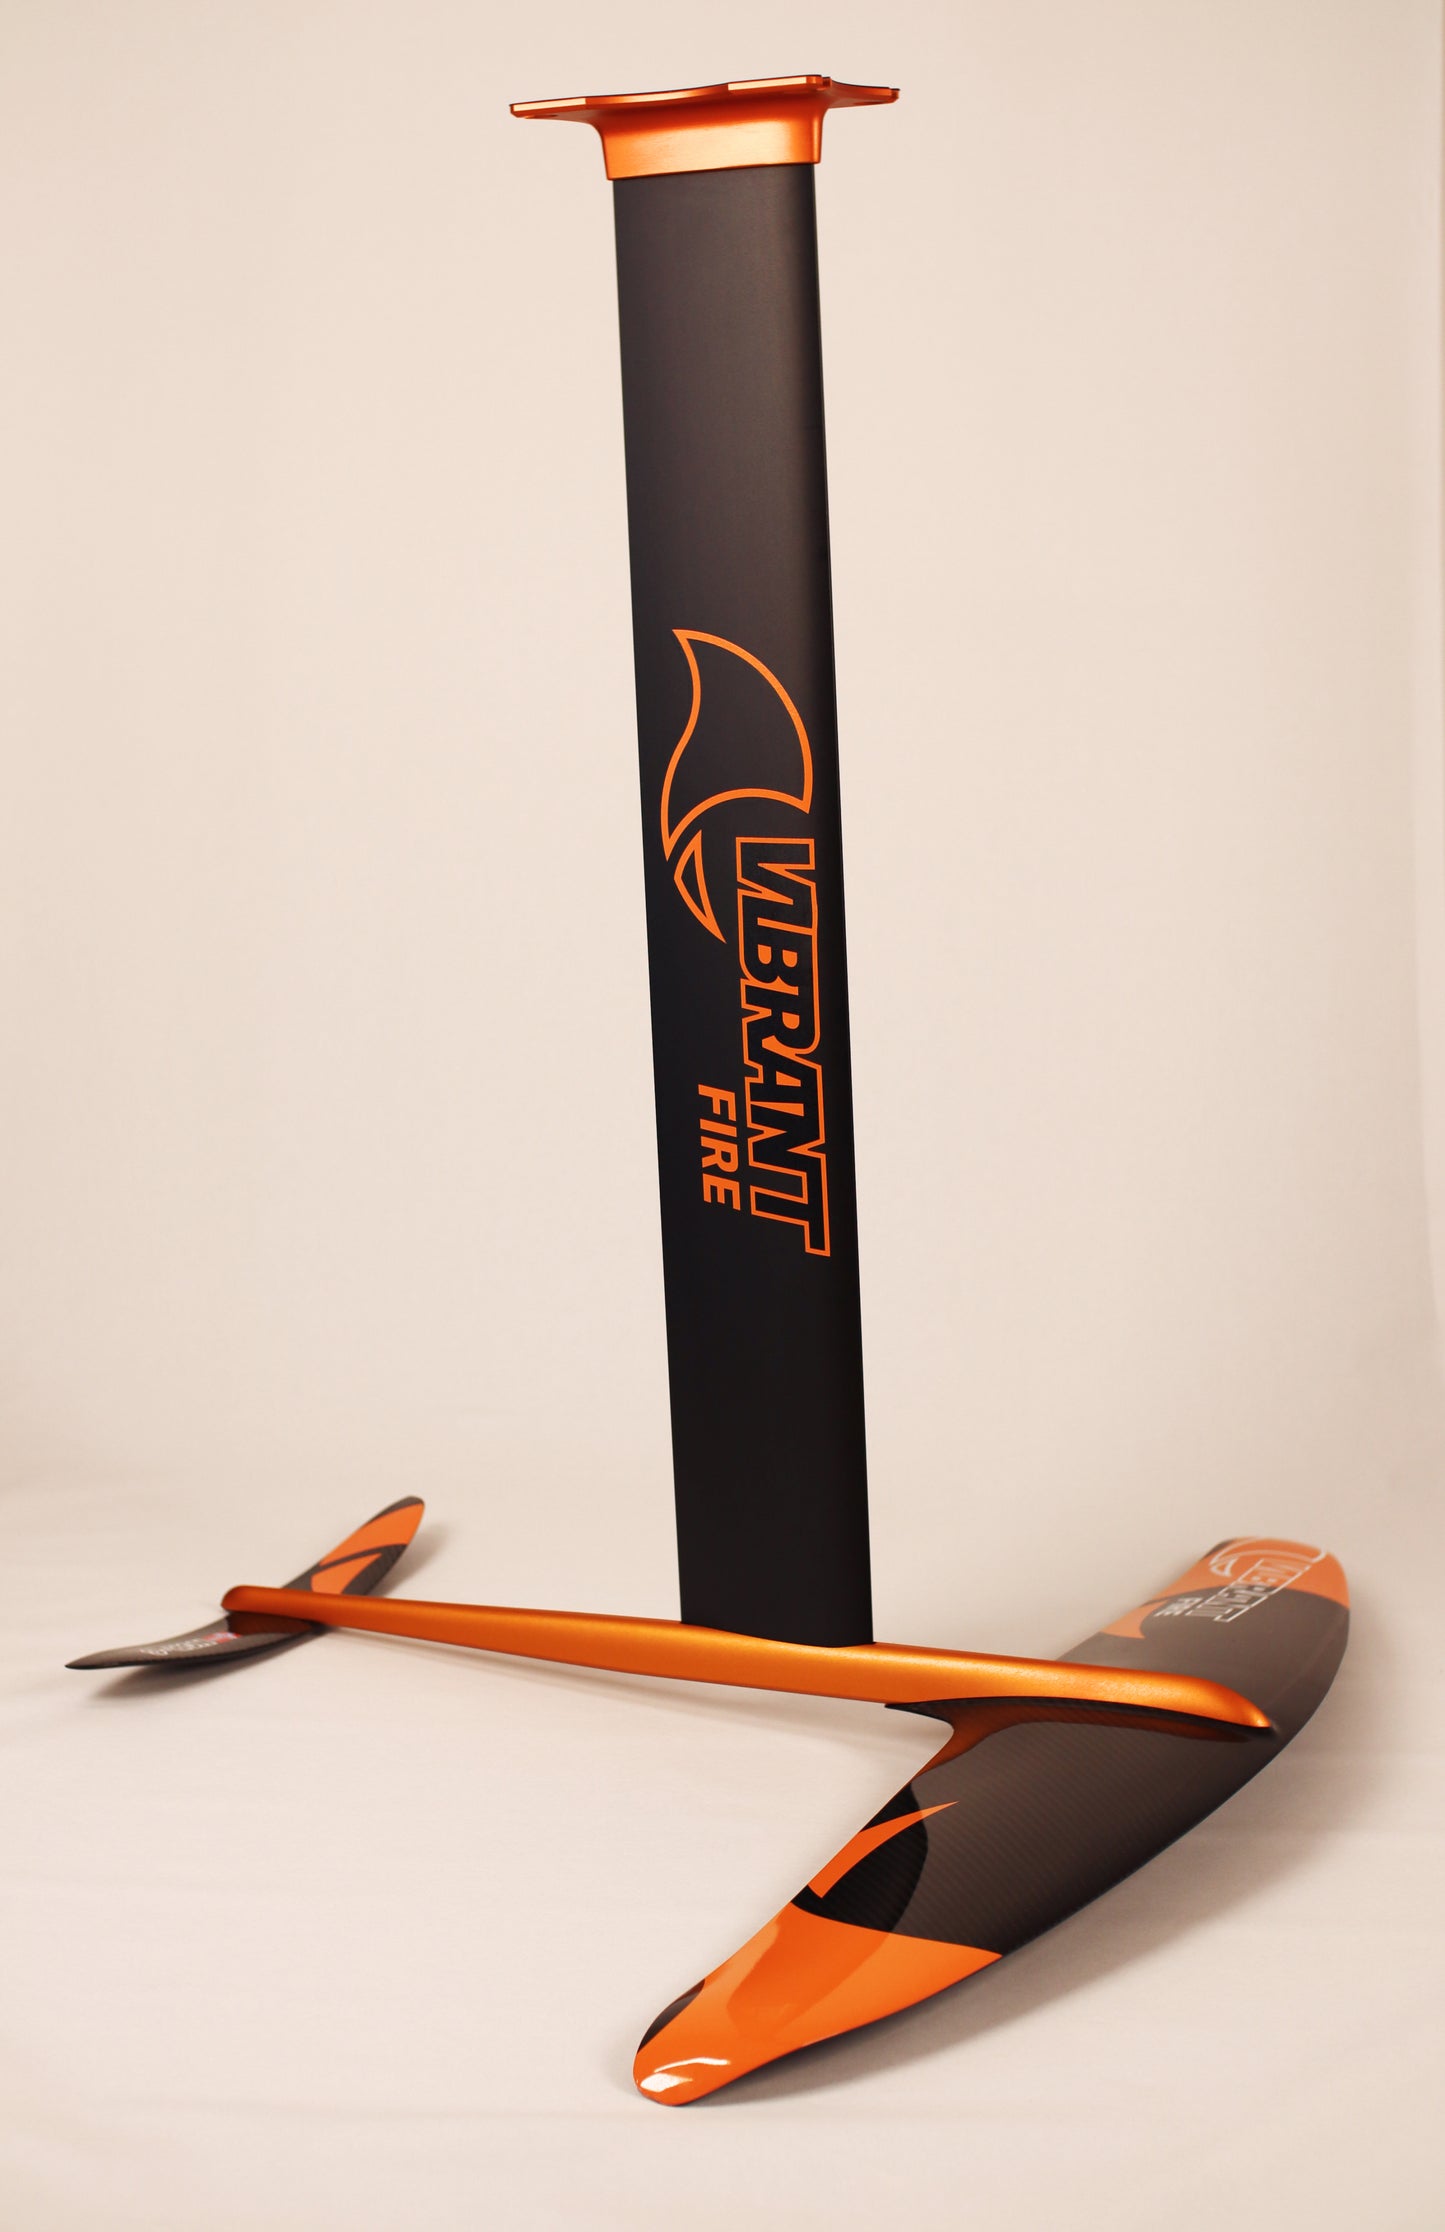 VIBRANT SURF - 5´1´´brett og 940 foil tilbud